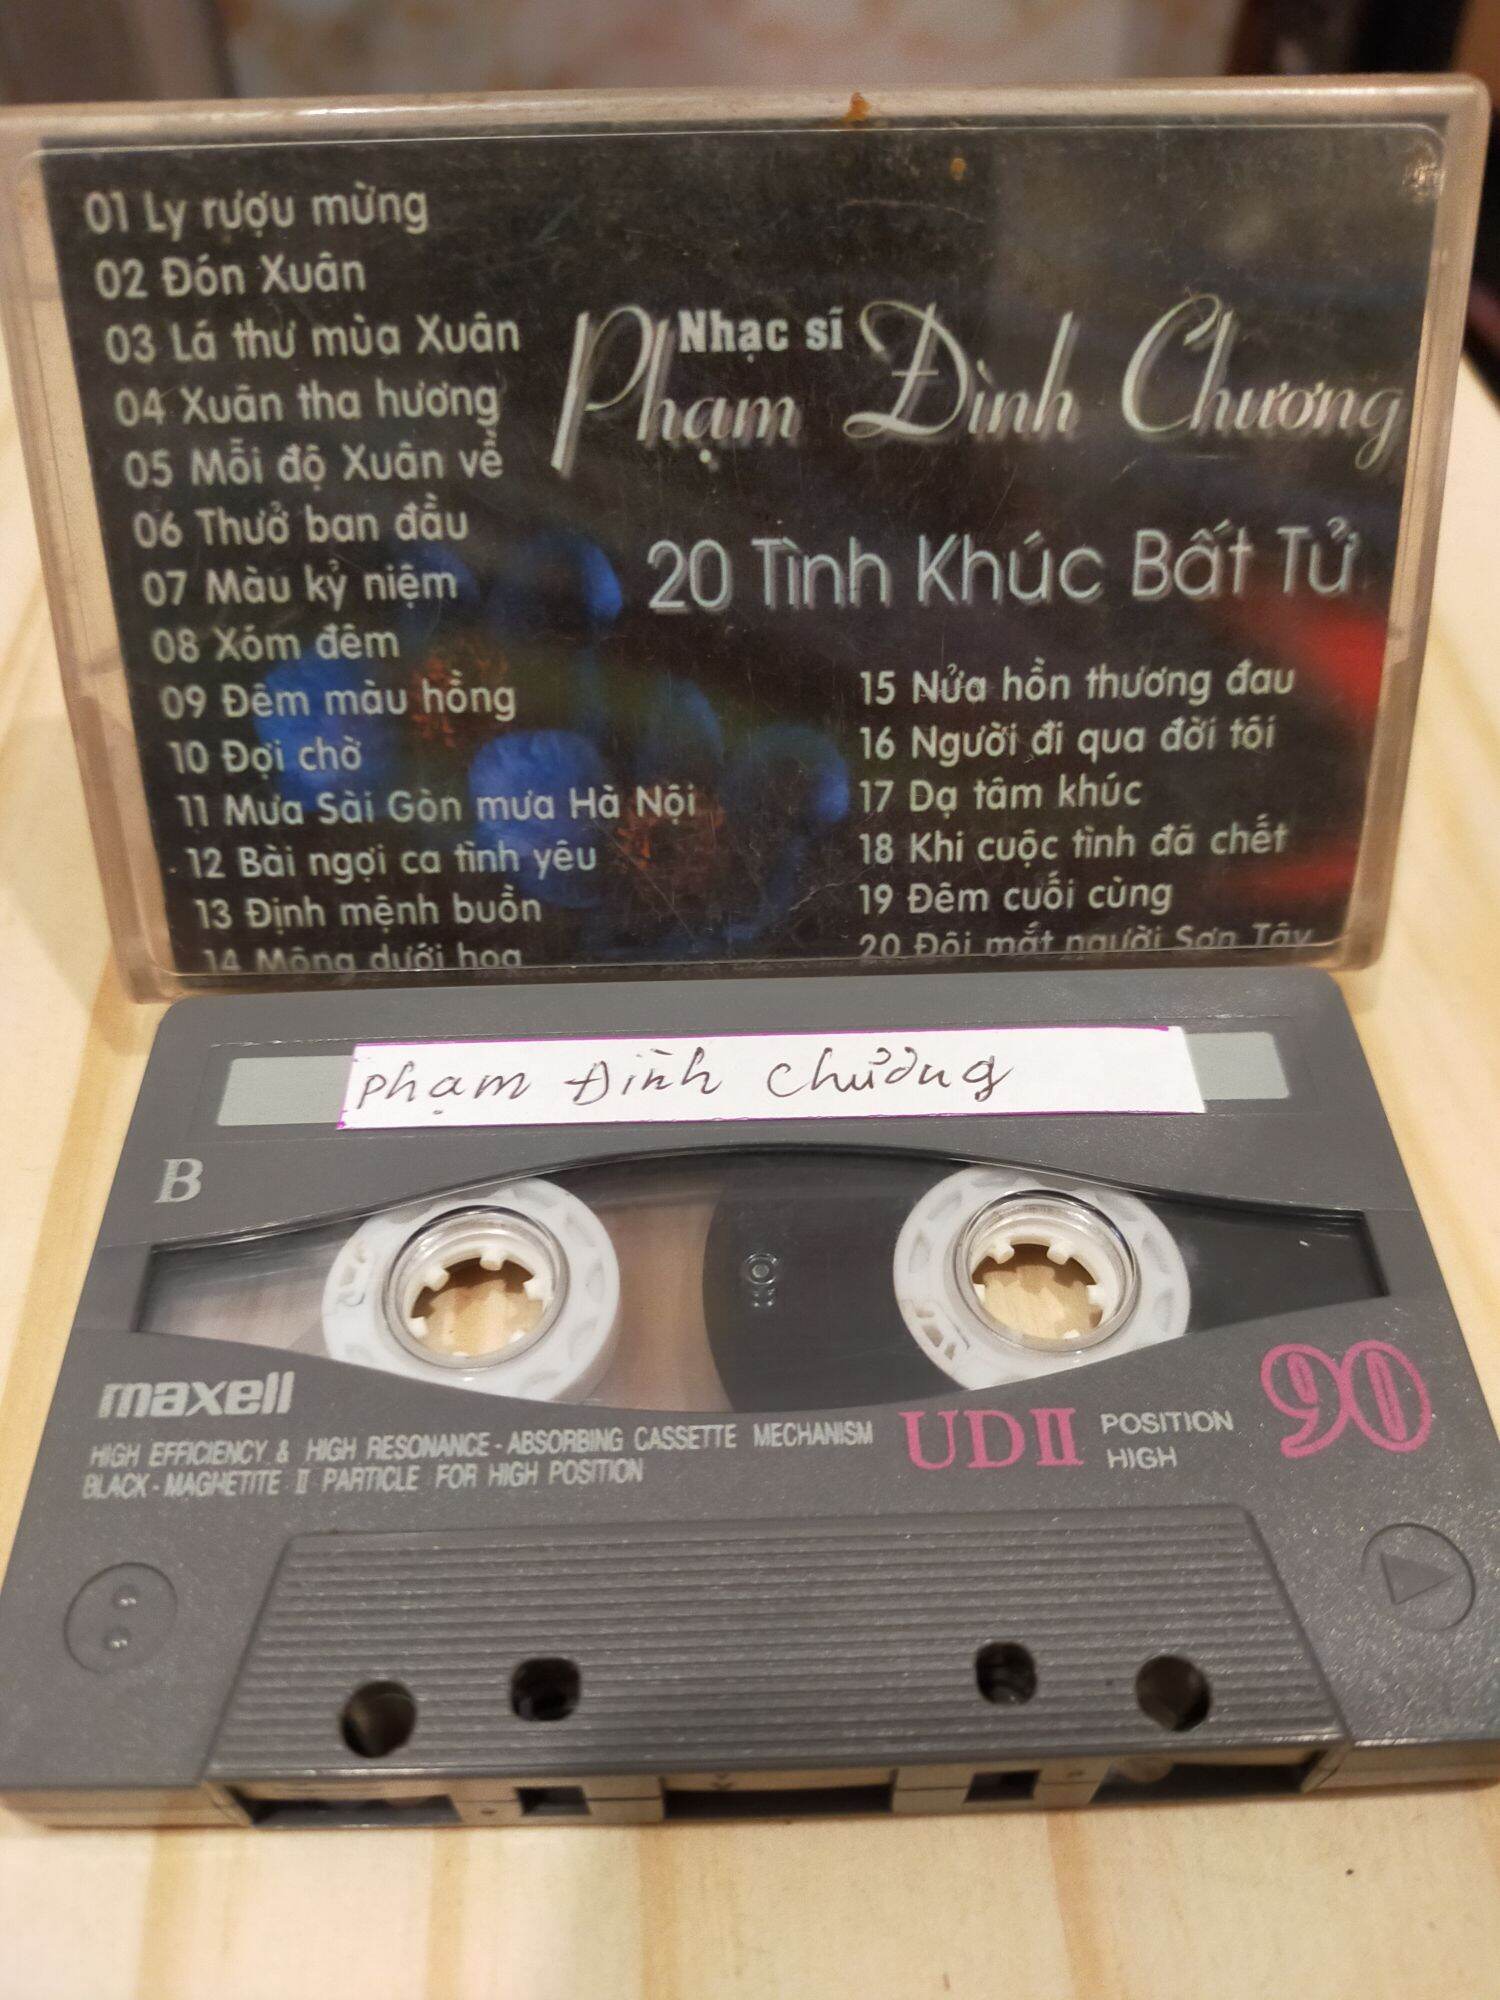 1 băng cassette maxell UD 2 tình khúc Phạm đình Chương( lưu ý: đây là băng cũ